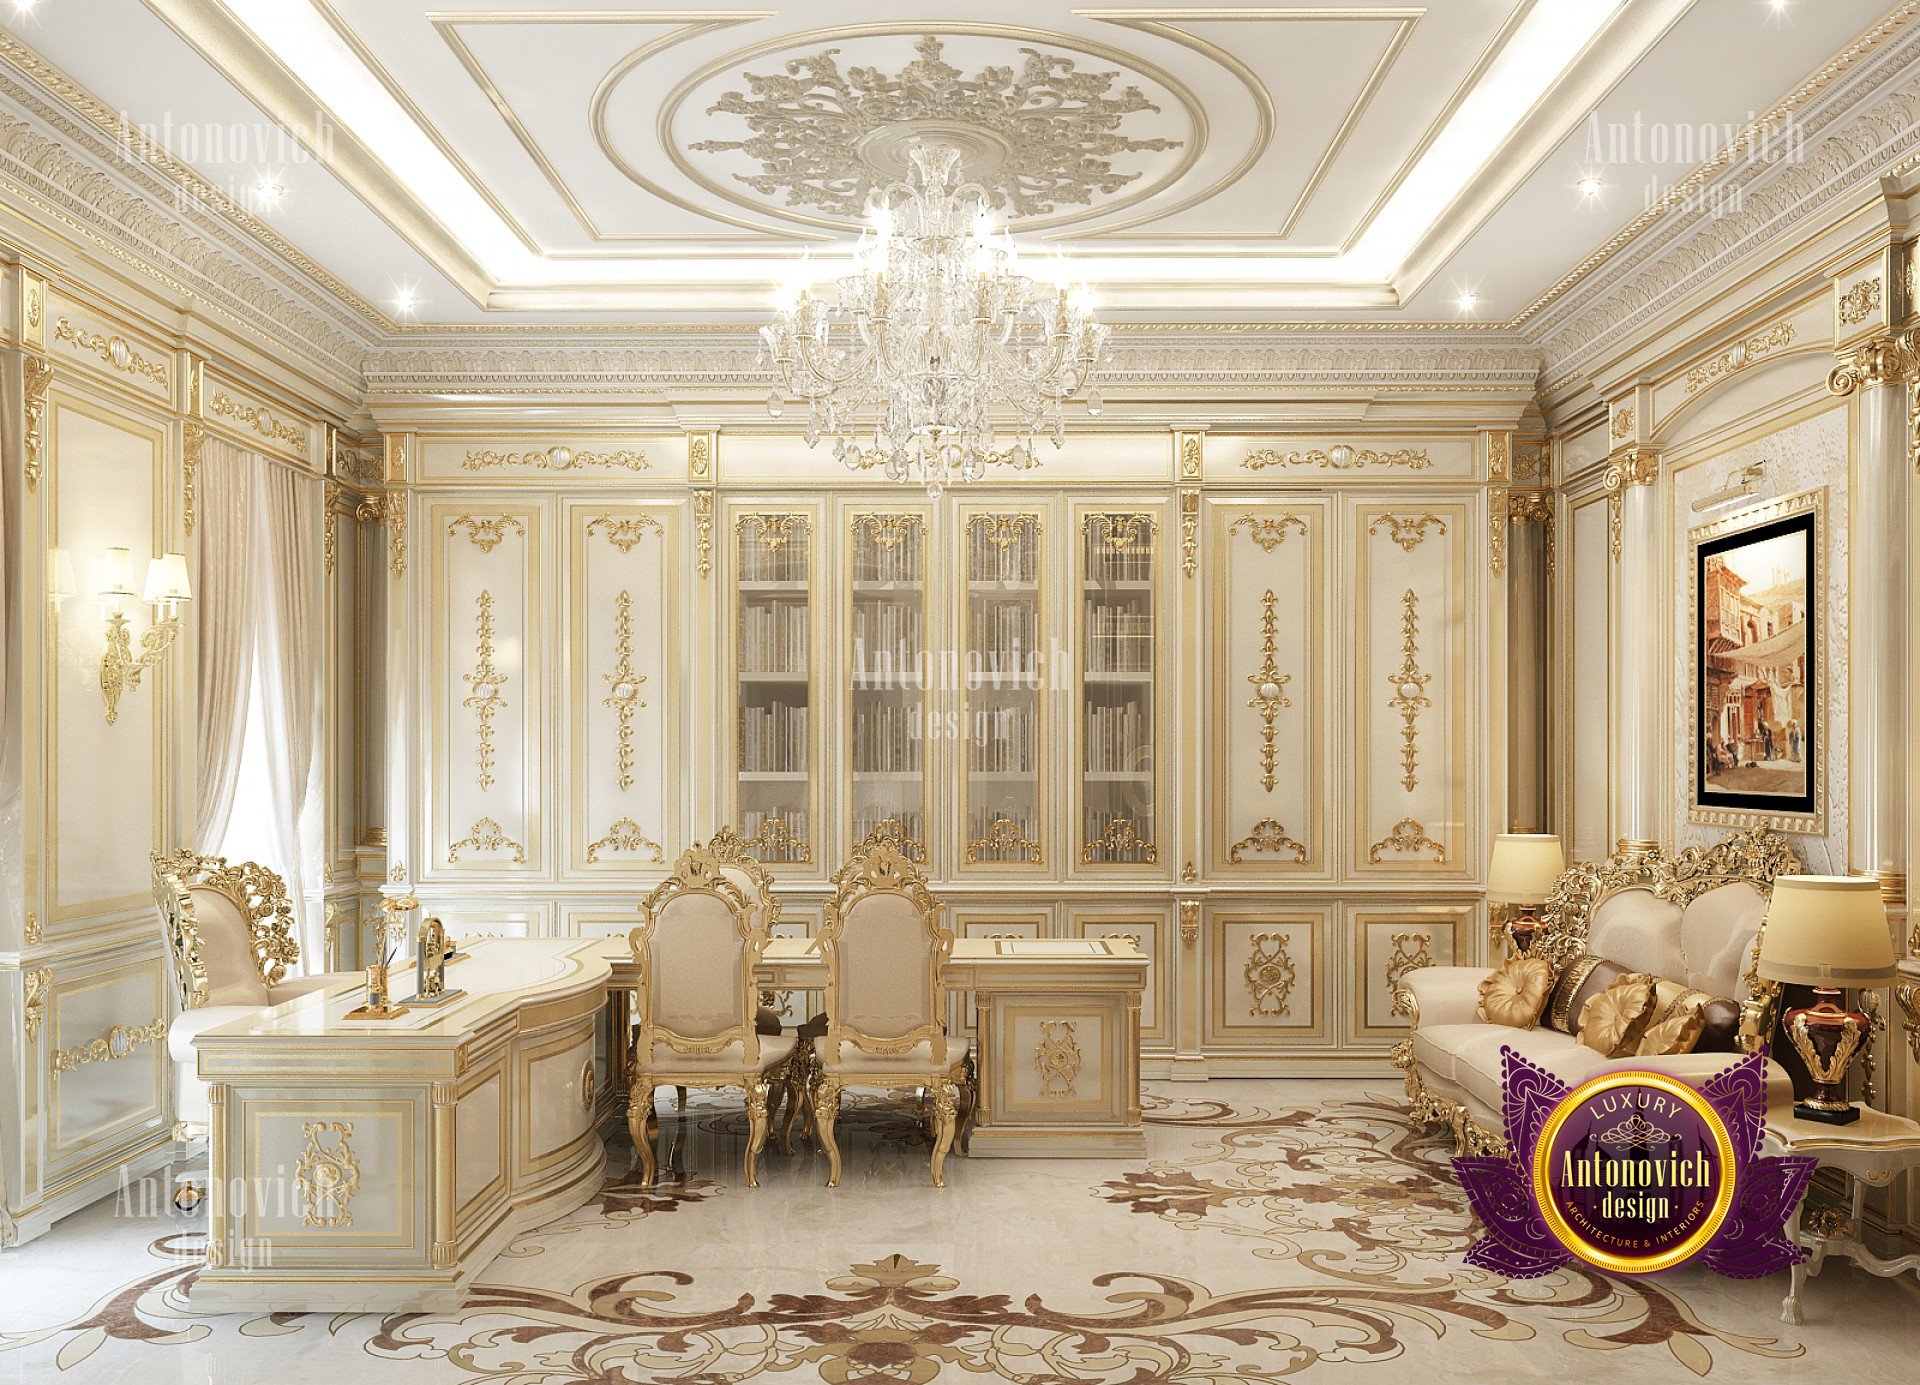 Royal classic office interior - luxury interior design ...